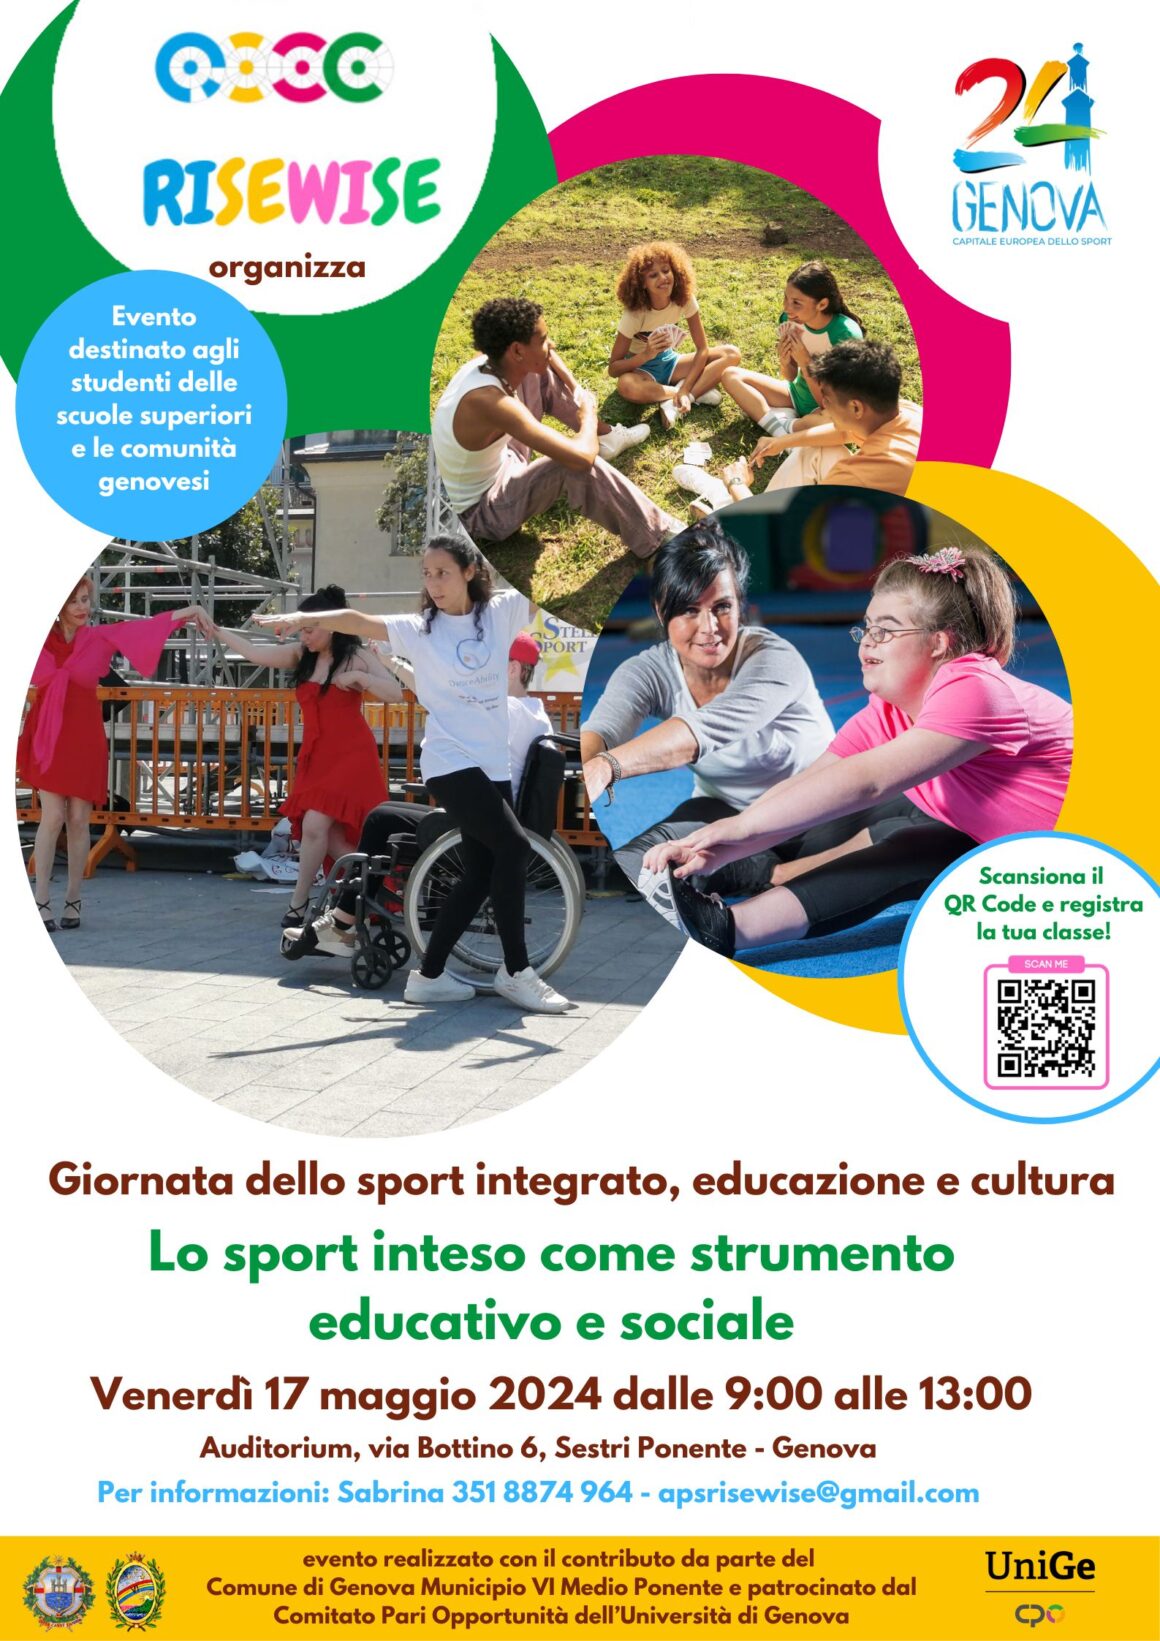 17/05 “Giornata dello sport integrato, educazione e cultura” – Evento riservato alle scuole superiori e alle comunità del territorio genovese